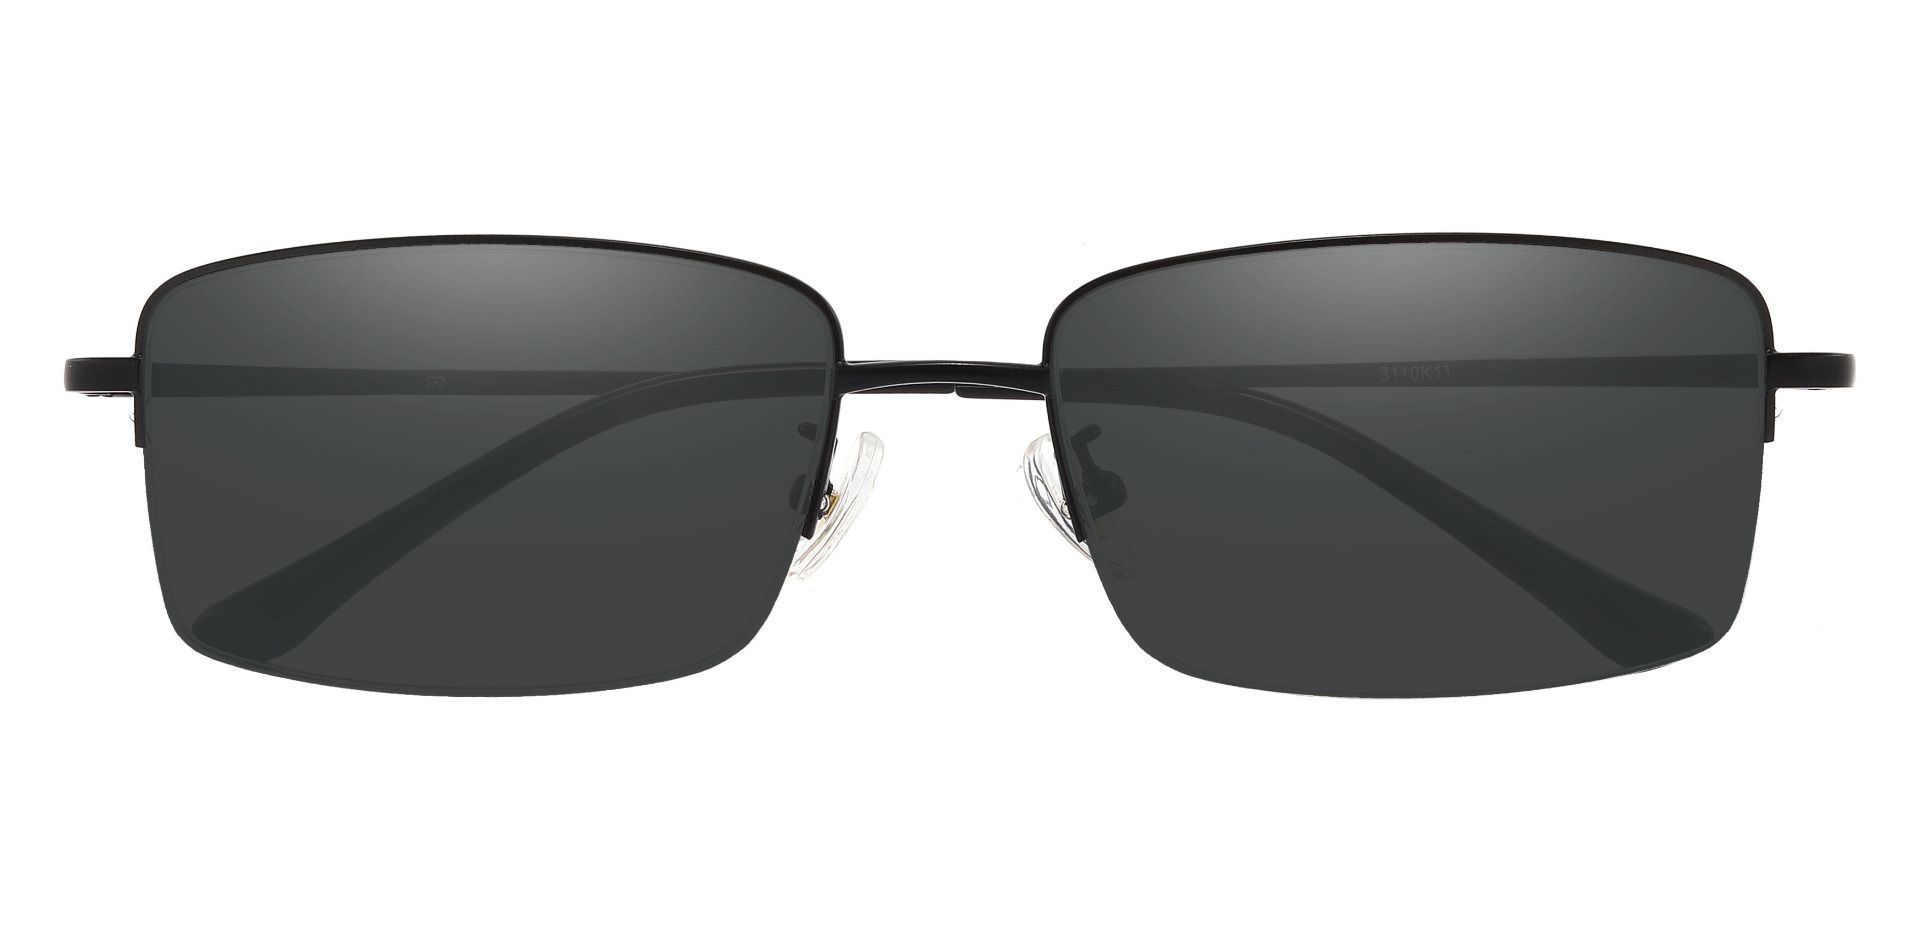 Bellmont Rectangle Progressive Sunglasses - Black Frame With Gray Lenses